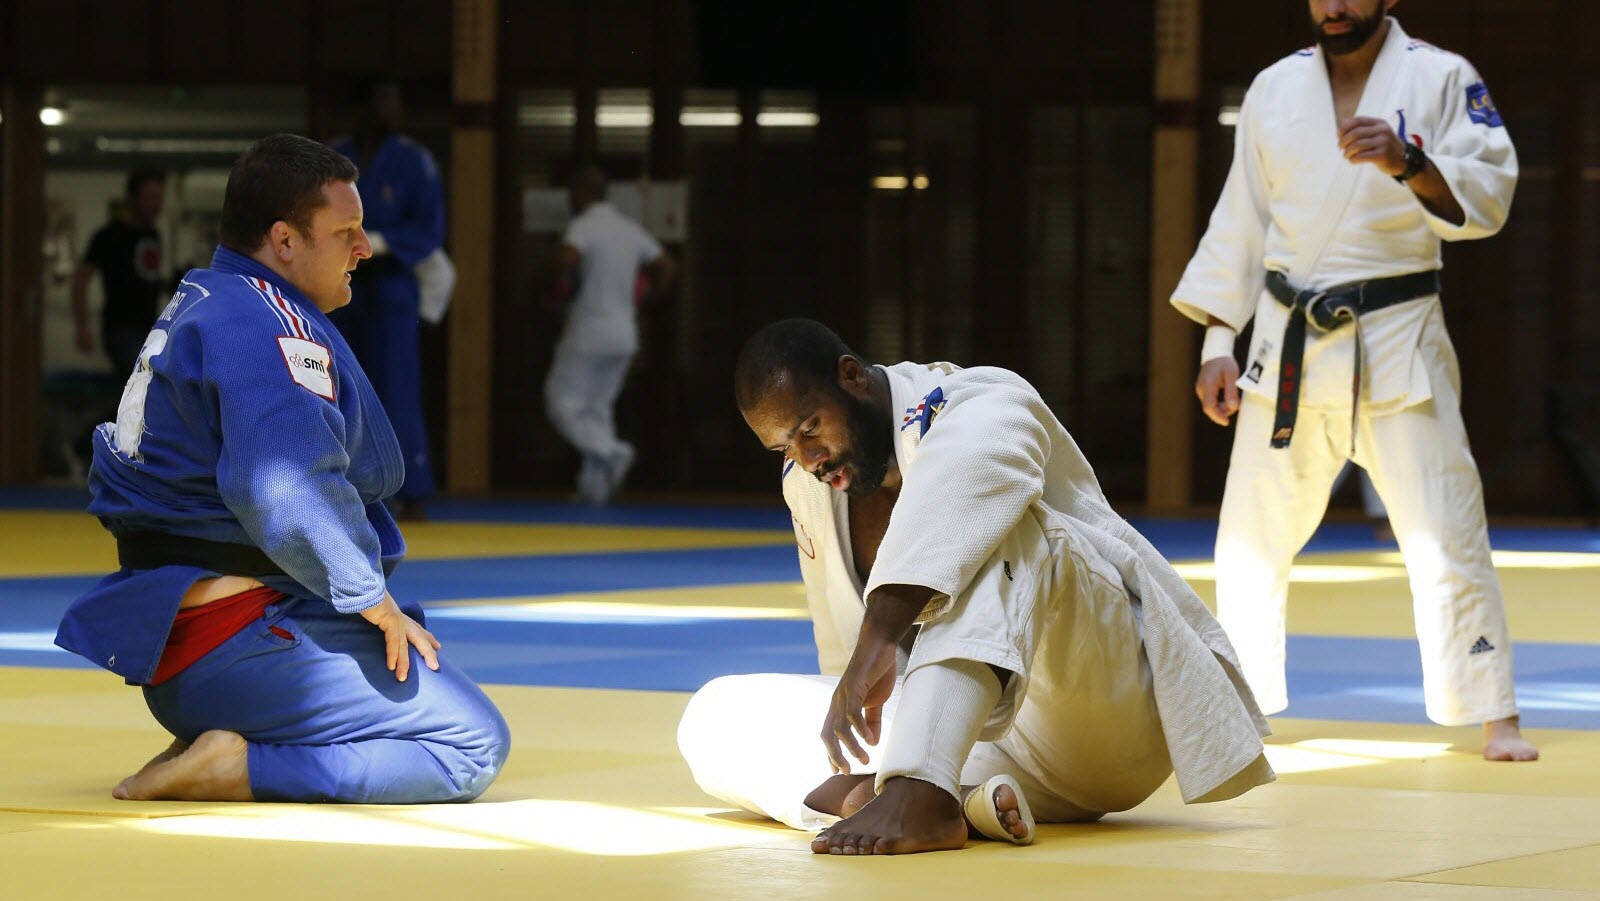 Colosse de l'Arène : Teddy Riner et la domination sans équivoque du judo mondial !